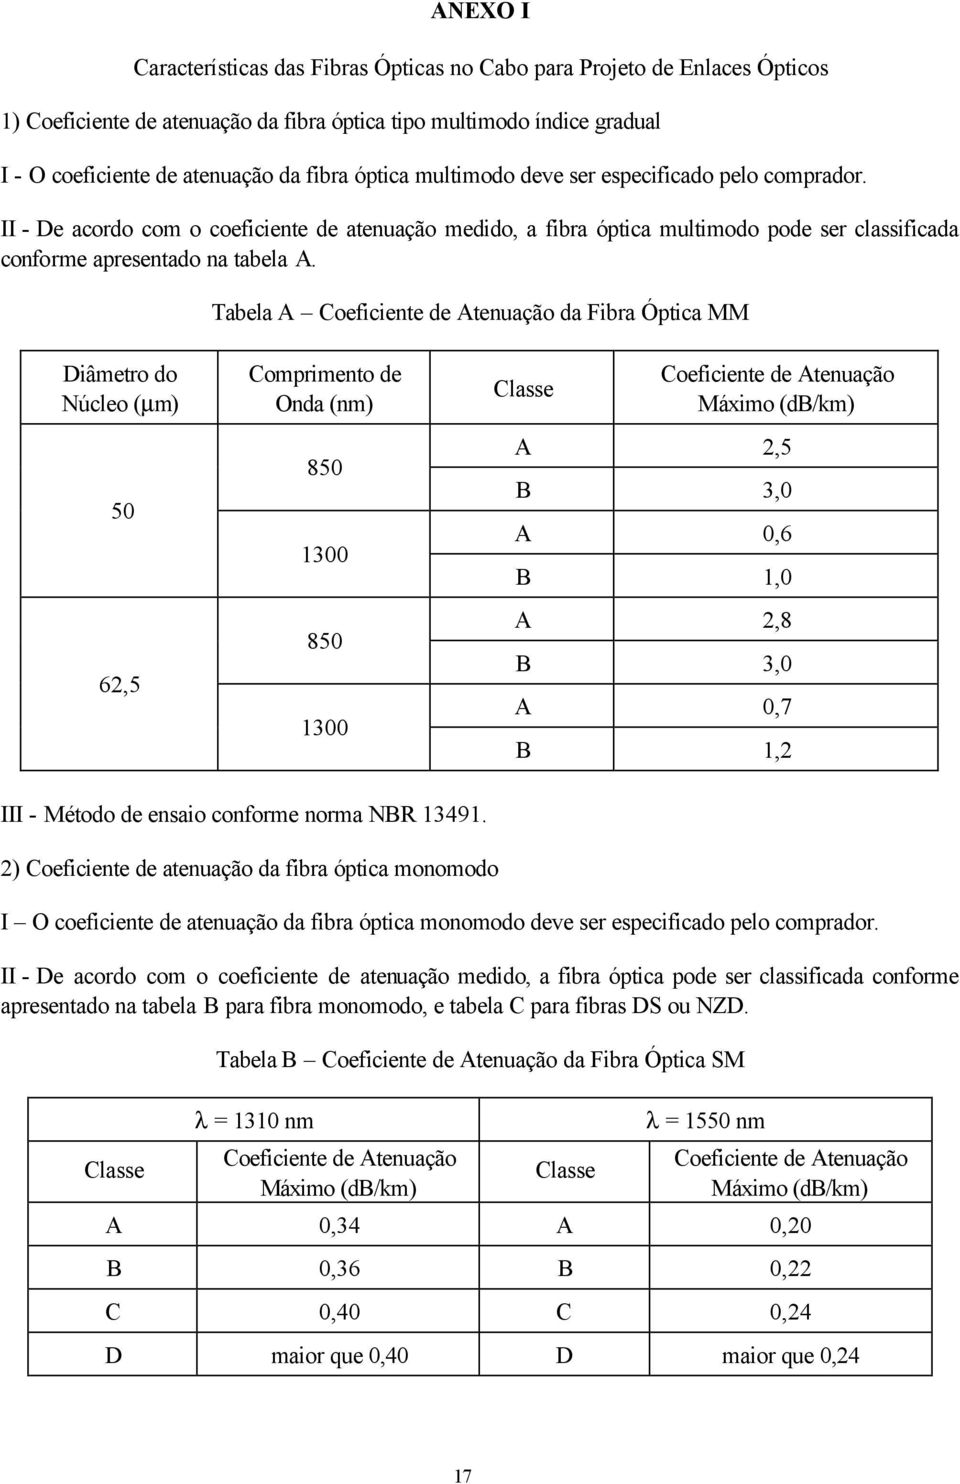 Tabela A Coeficiente de Atenuação da Fibra Óptica MM Diâmetro do Núcleo (µm) 50 62,5 Comprimento de Onda (nm) 850 1300 850 1300 Classe Coeficiente de Atenuação Máximo (db/km) A 2,5 B 3,0 A 0,6 B 1,0